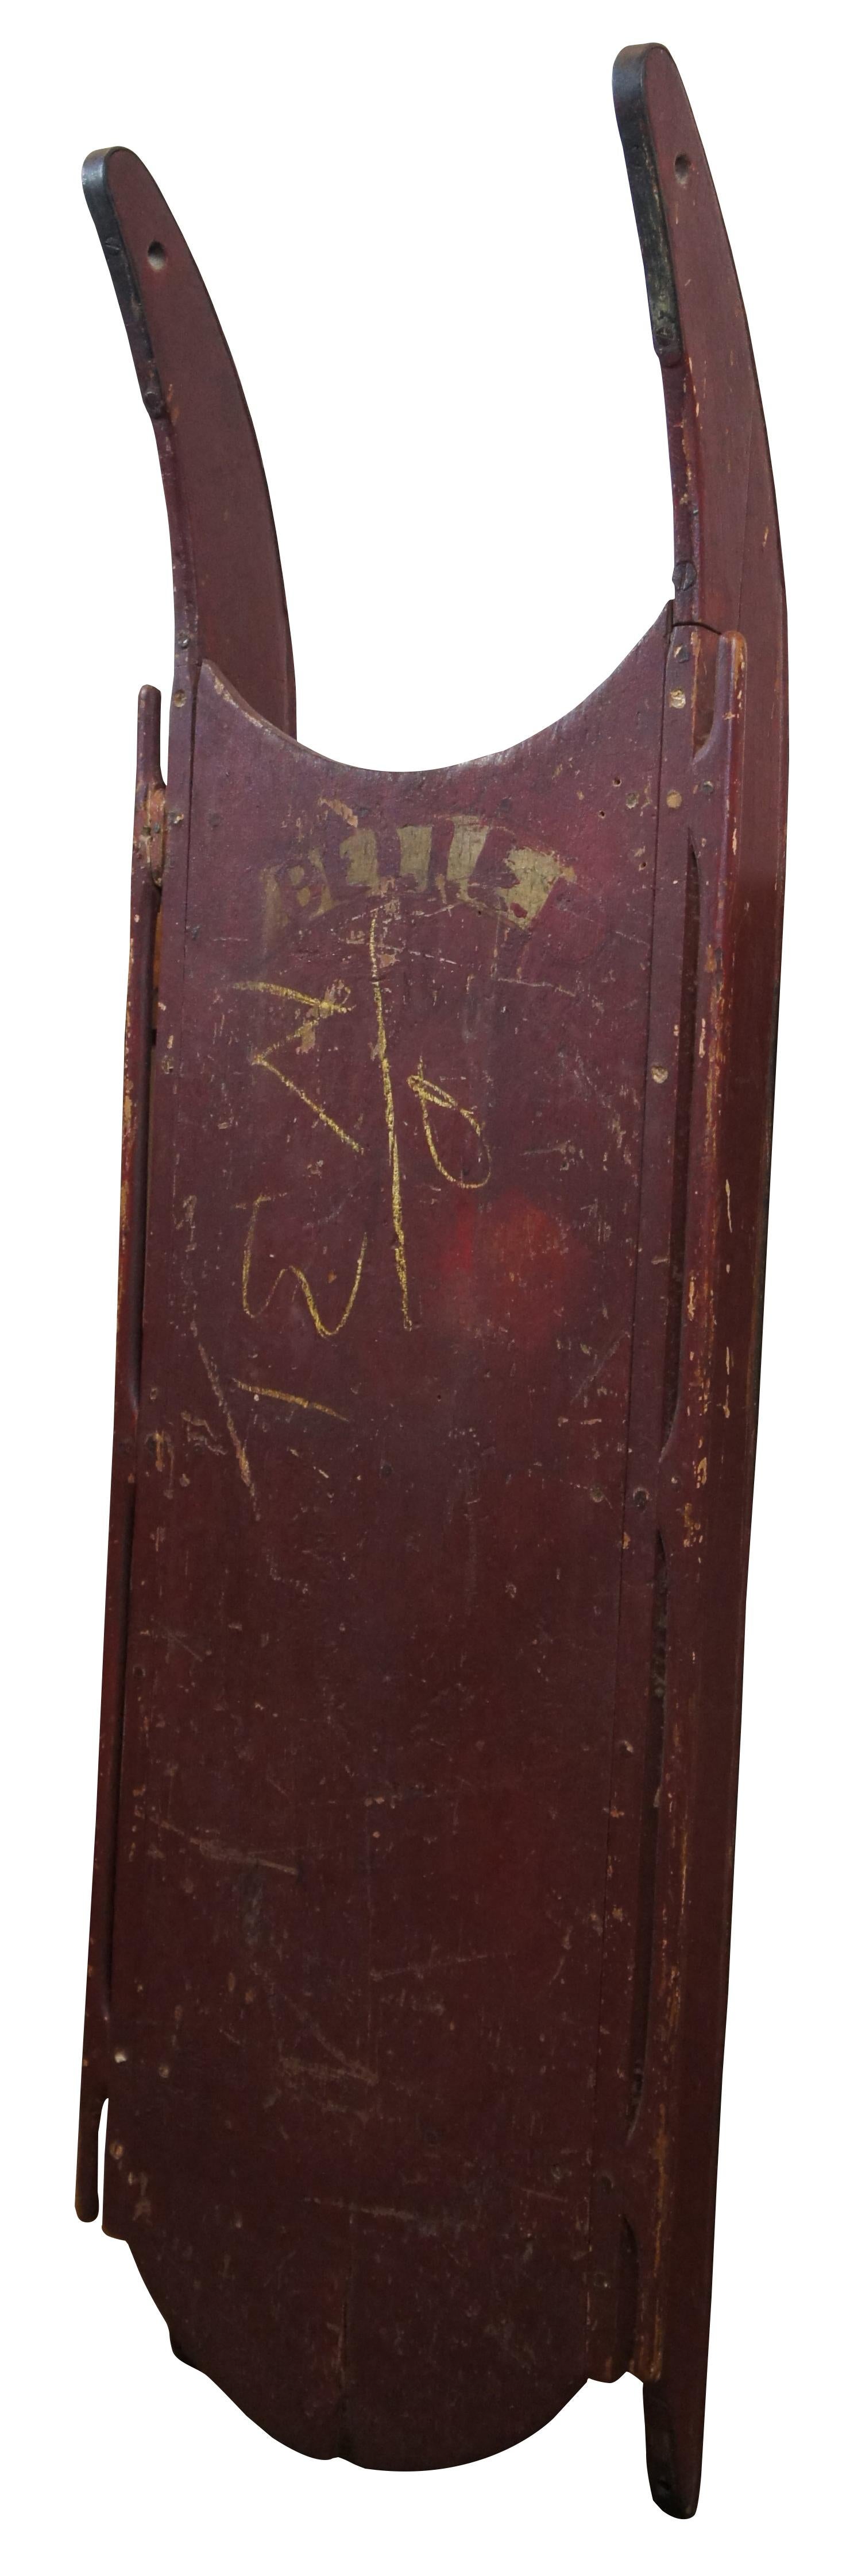 Ancienne luge d'enfant victorienne en bois avec des patins en fer, peinte en rouge foncé avec le mot 